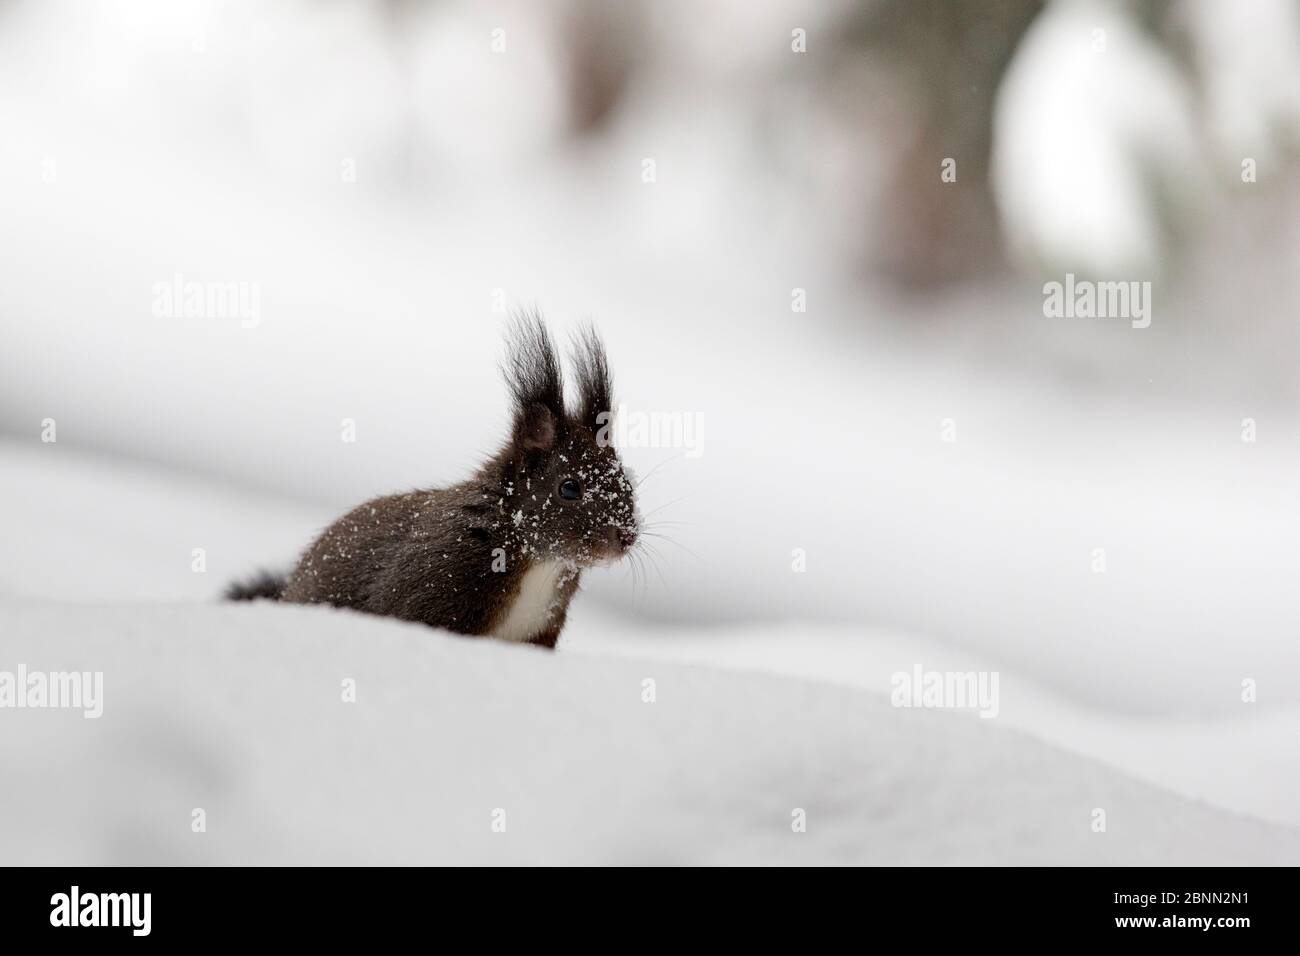 Scoiattolo rosso (Sciurus vulgaris) morfo melanistico nella neve profonda, Crans Montana, le Alpi, Vallis, Svizzera. Febbraio Foto Stock